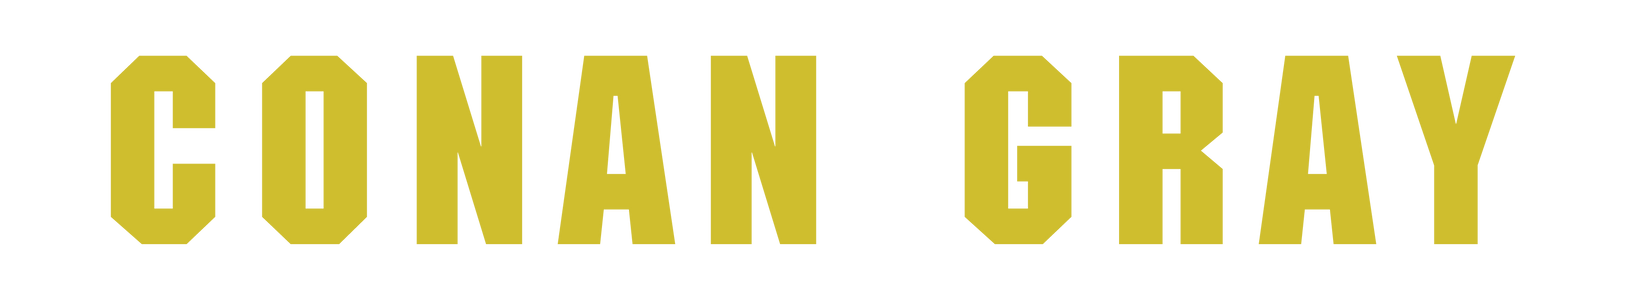 Conan Gray Official Store logo